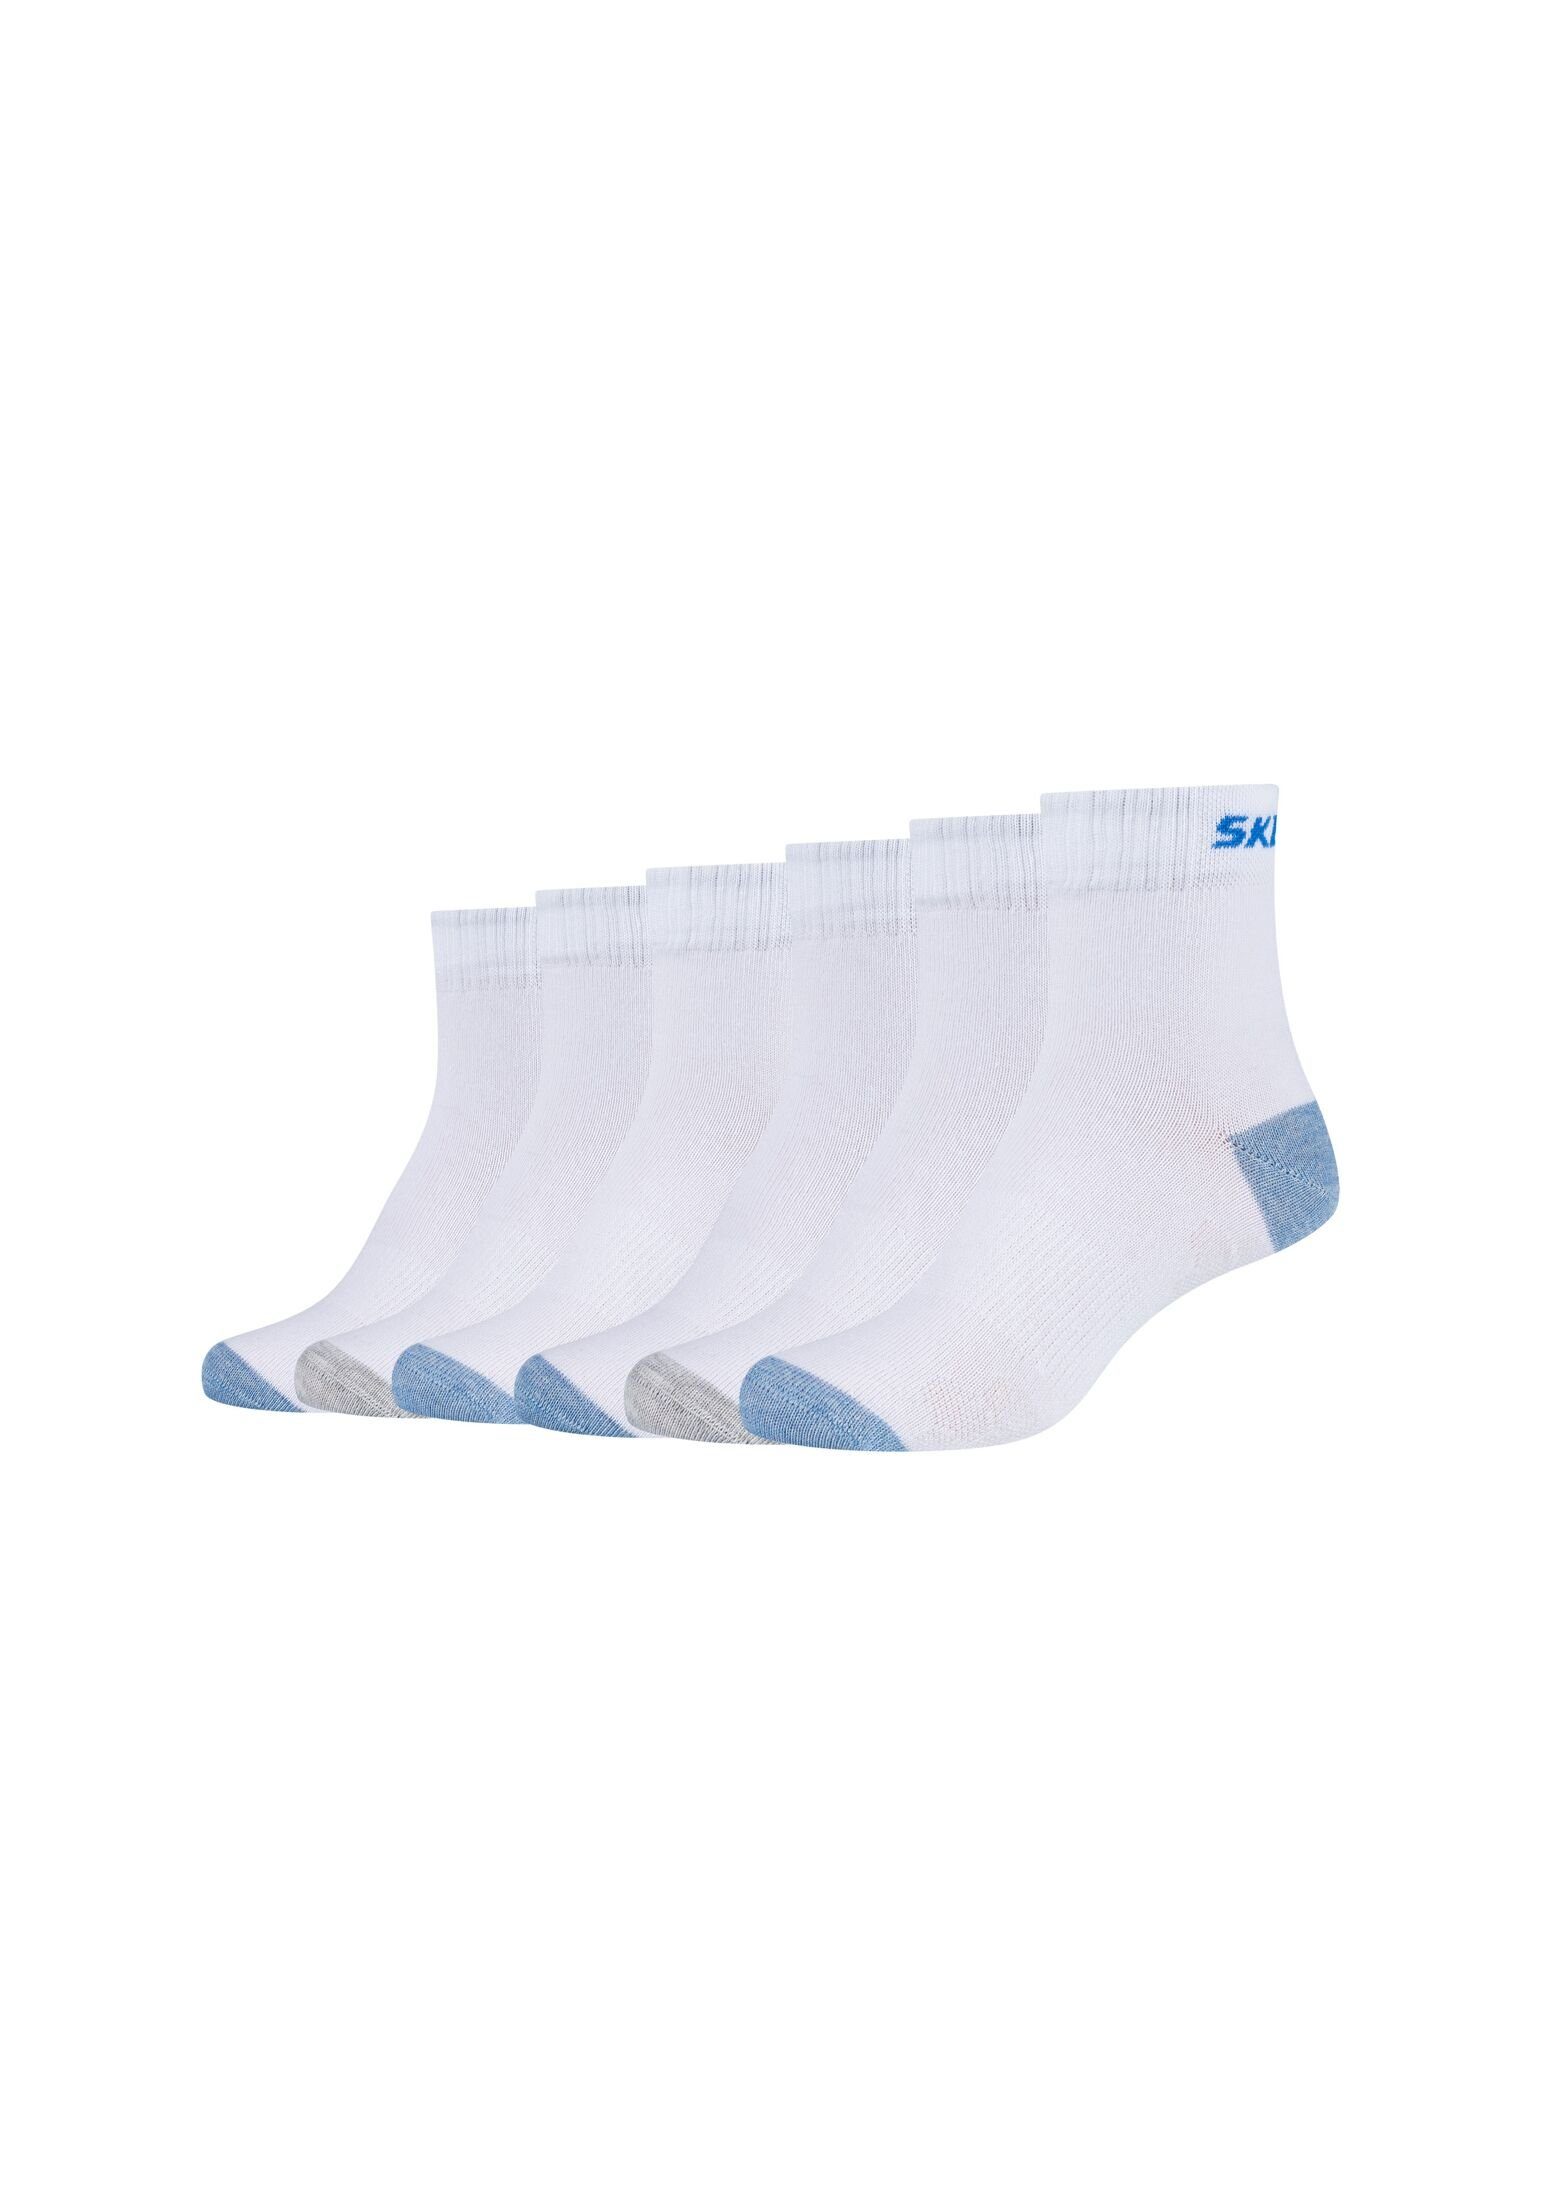 Preisangebot Skechers Socken Socken 6er Pack white